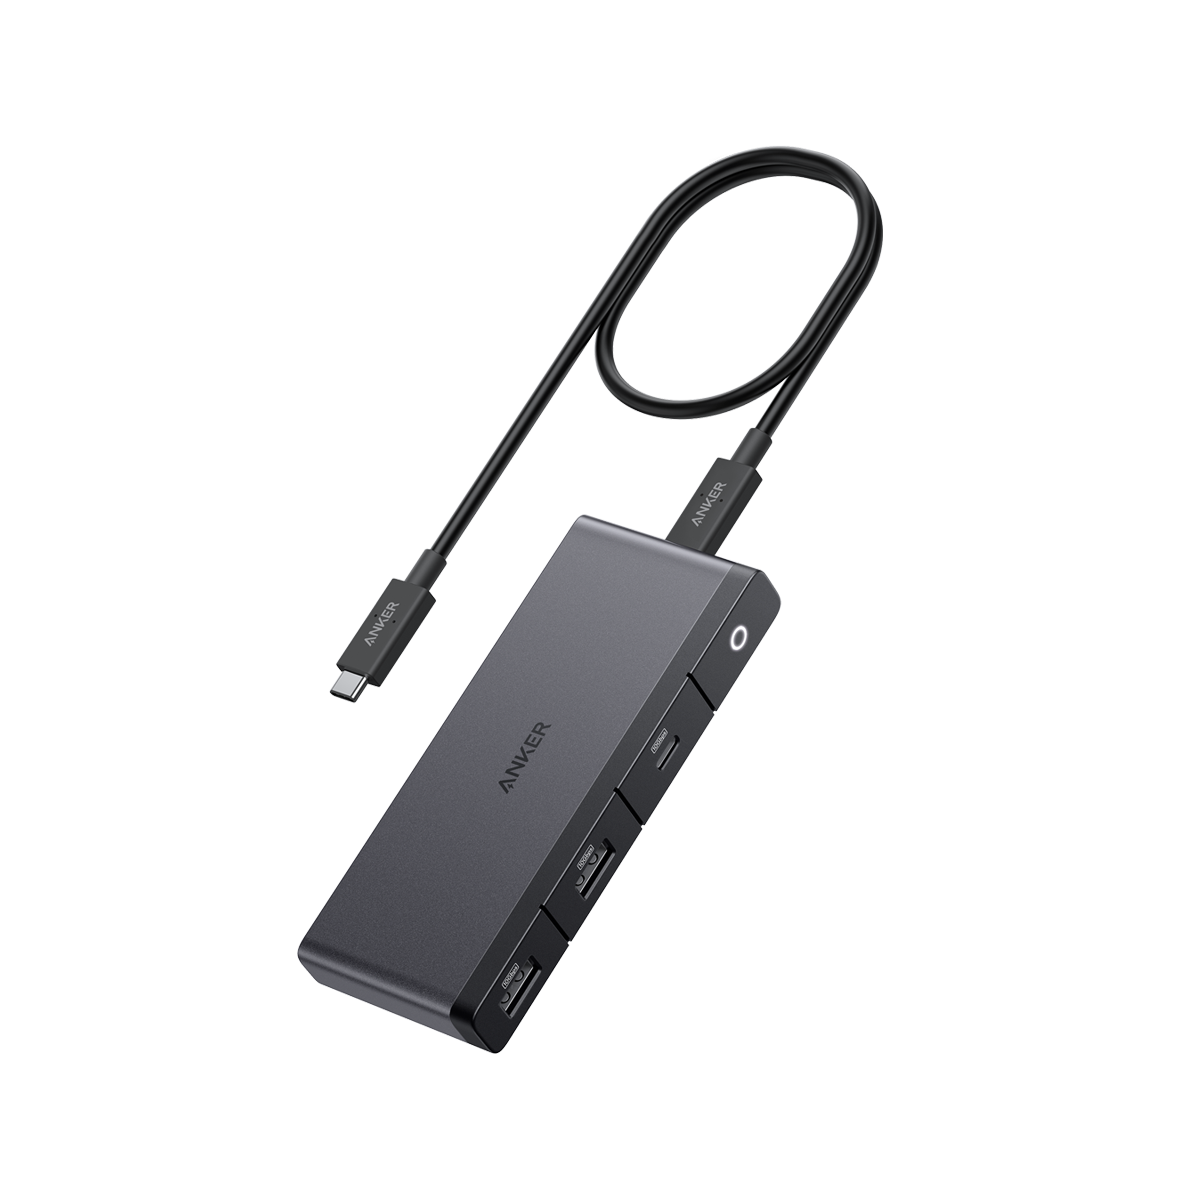 Anker 543 USB-C Hub (6-in-1, Slim) - Anker US